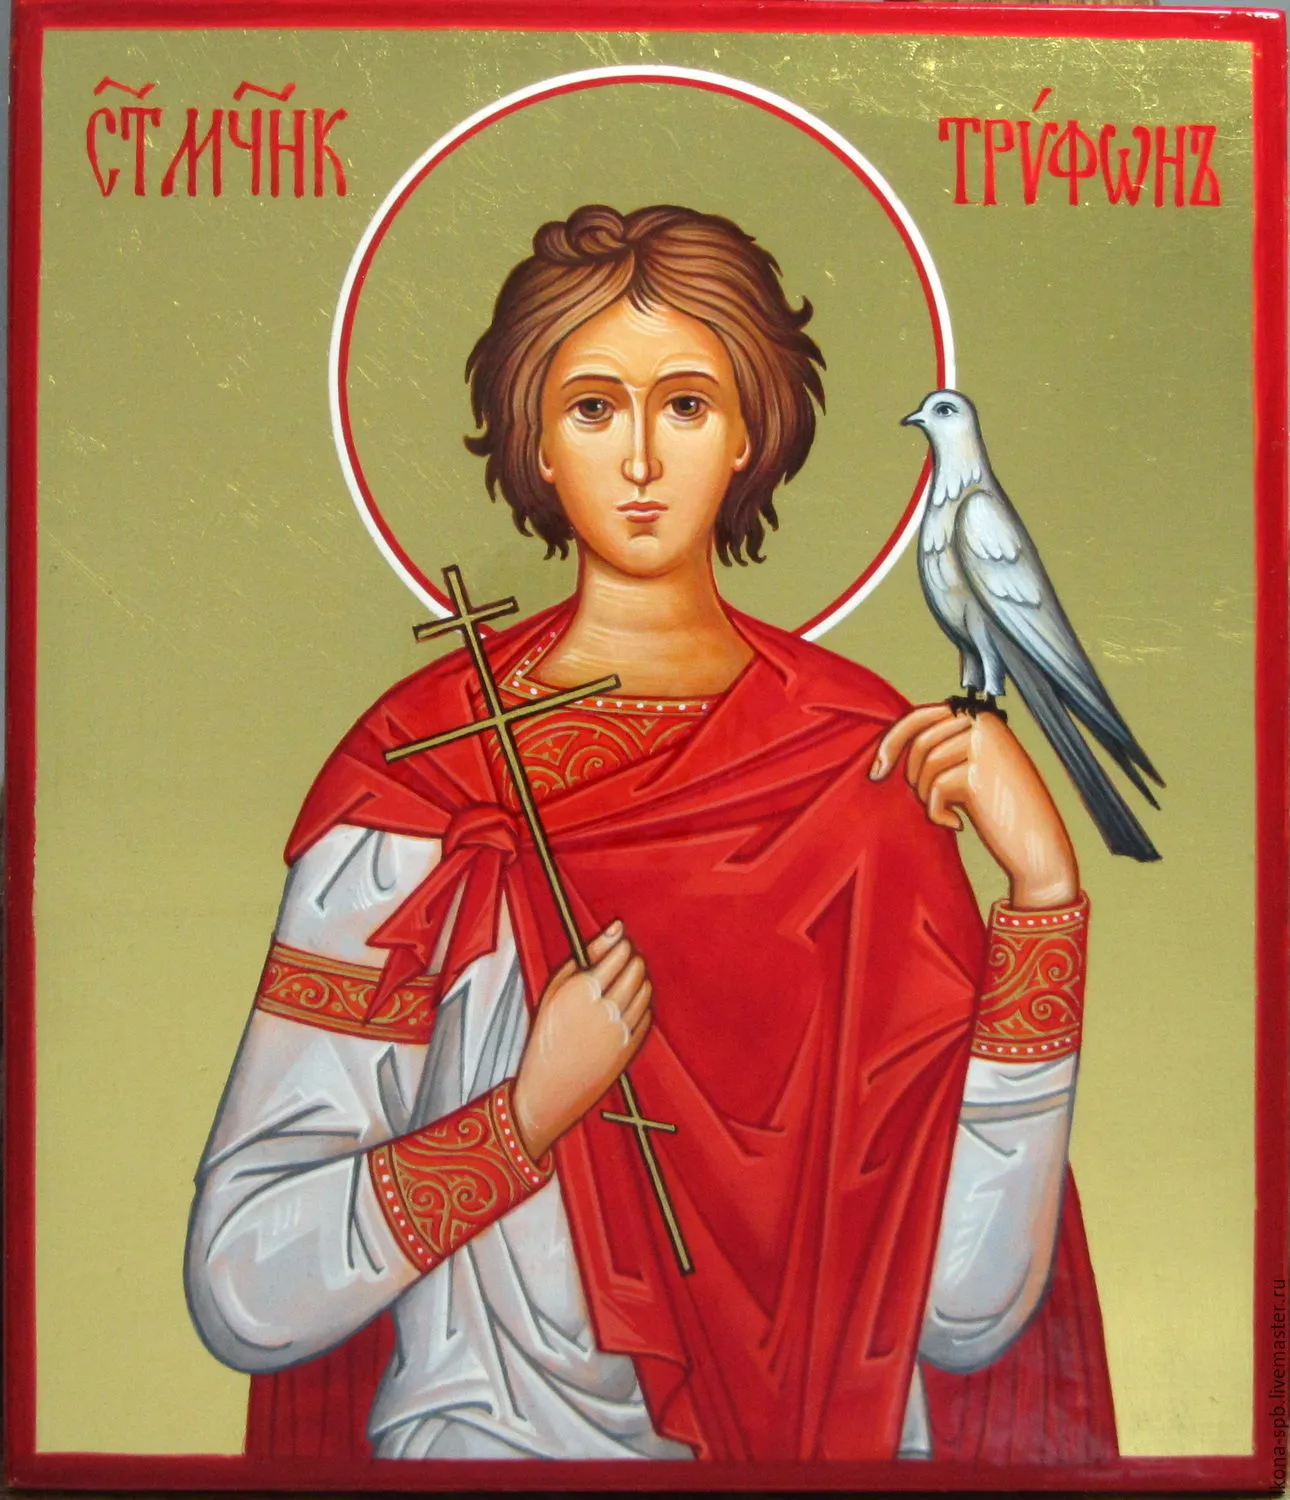 Дни памяти трифона. Икона Святого великомученика Трифона. Икона Святого Трифона Апамейского.